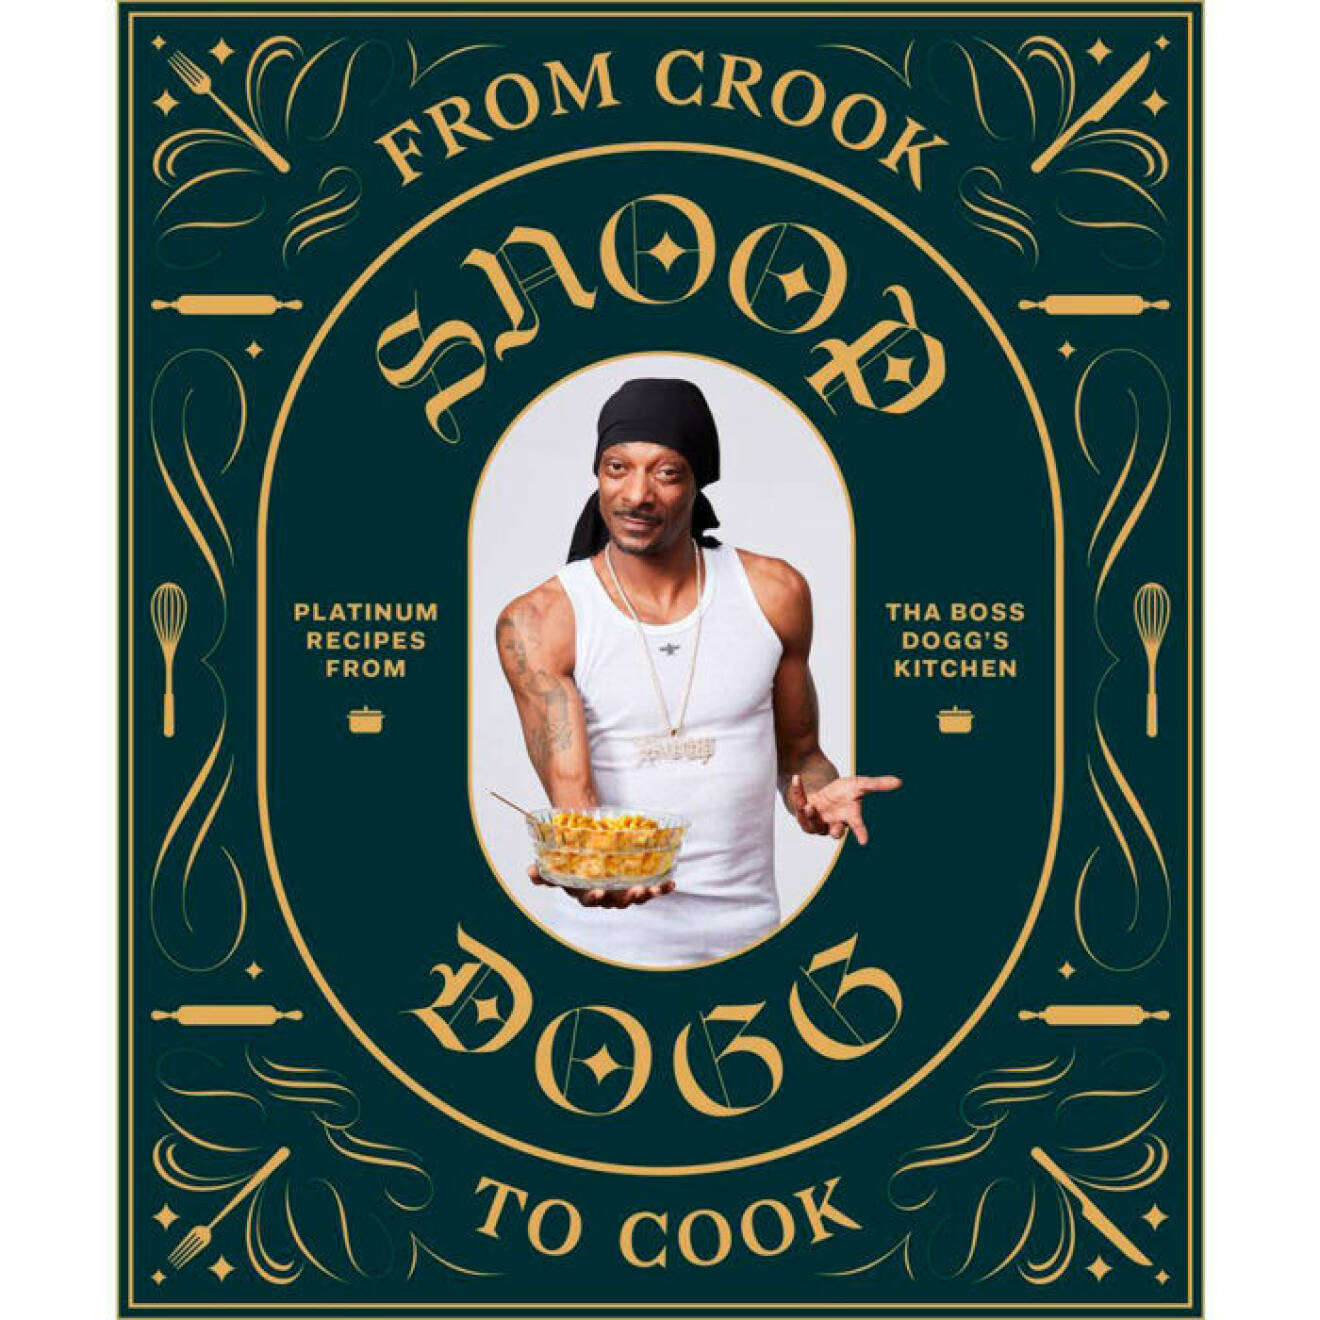 Snoop Doggs kokbok